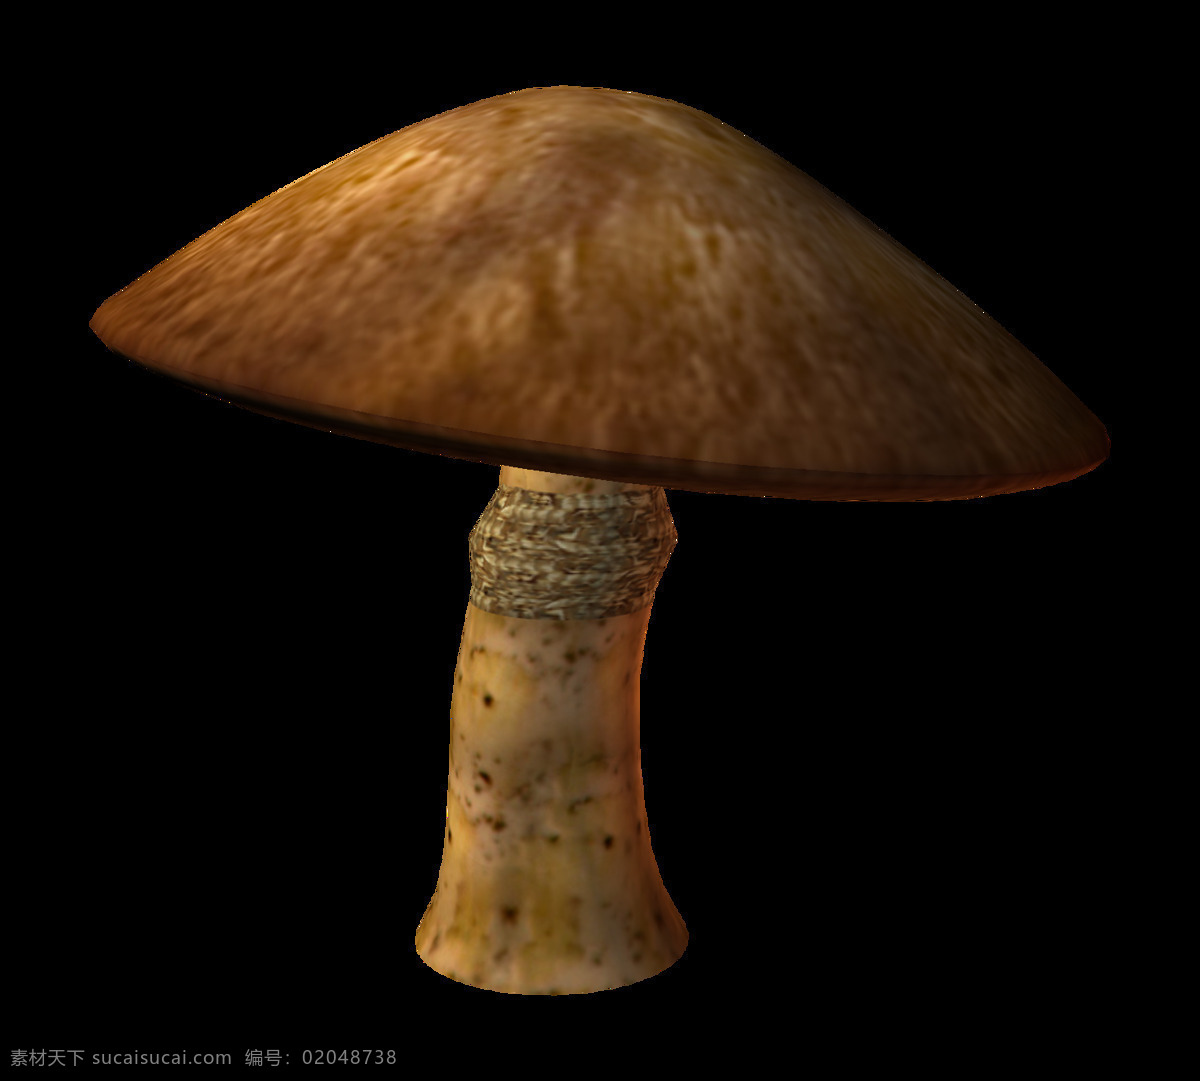 雨 后 新鲜 蘑菇 元素 菌类 美食